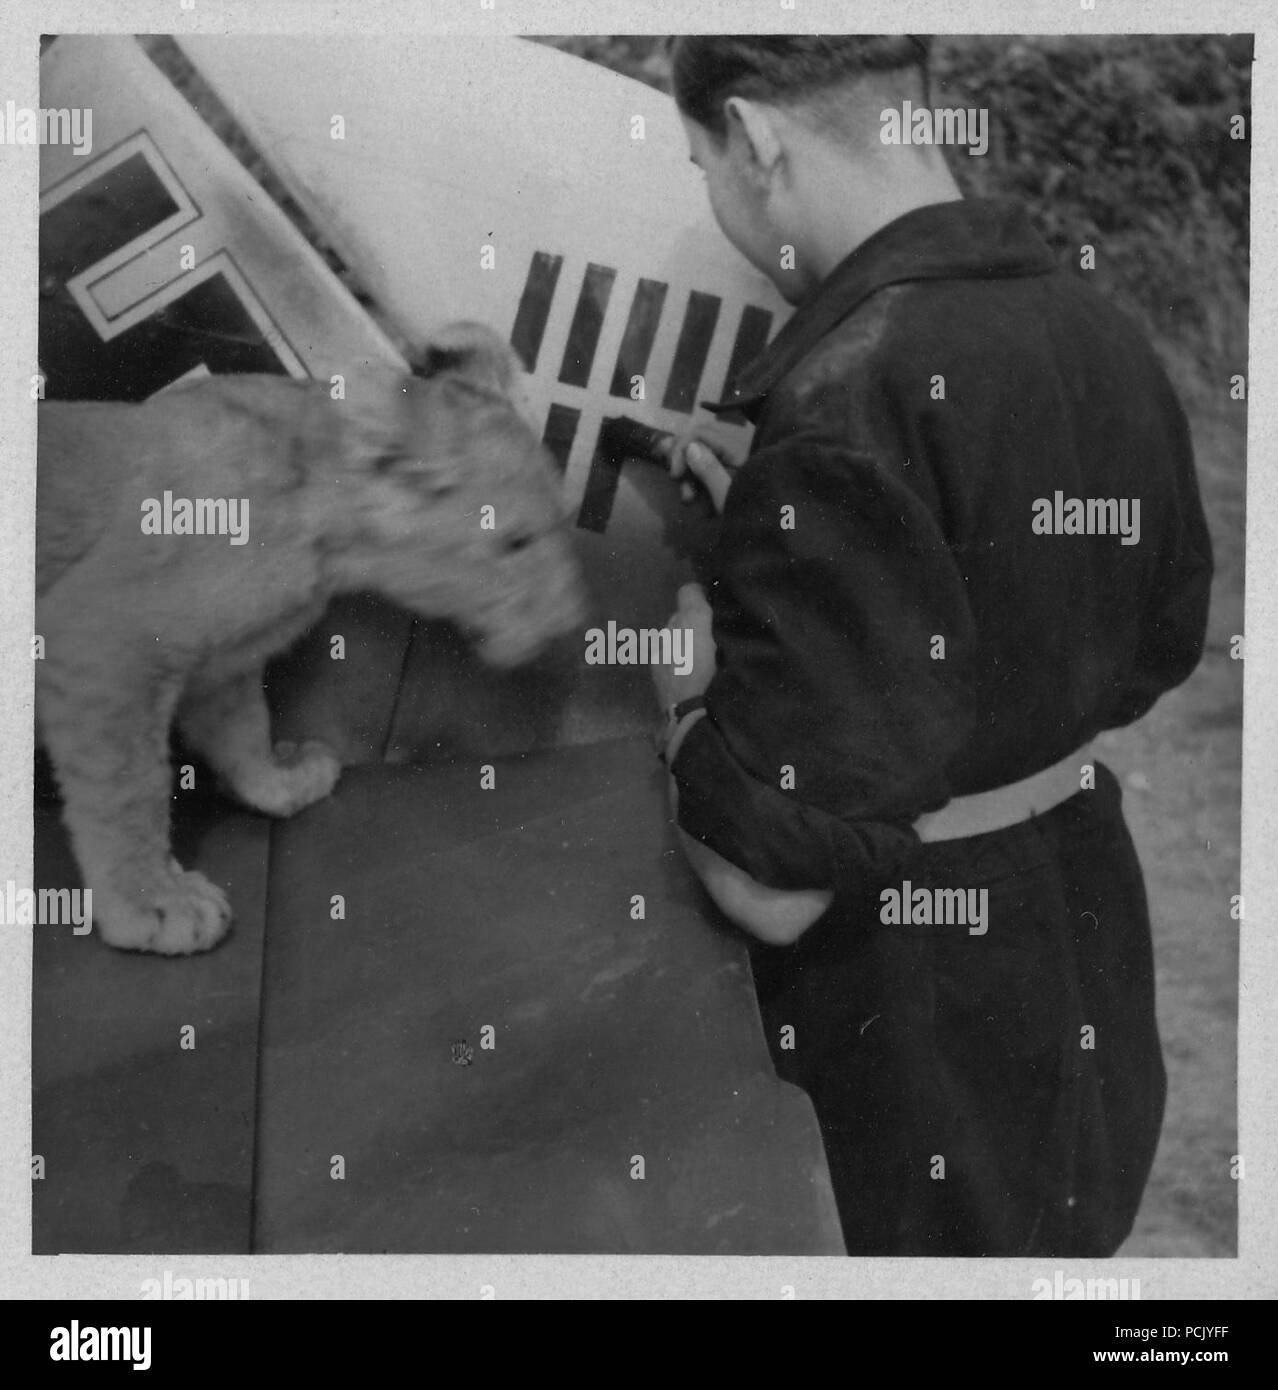 Image à partir d'un album de photos relatives à II. Gruppe, Jagdgeschwader 3 : 'Simba', le lion cub mascotte de II. Gruppe, Jagdgeschwader 3, joue sur la queue d'un Messerschmitt Bf 109E (peut-être que de l'oberleutnant Franz von Werra) en tant que membre de l'équipe au sol marque une autre victoire sur le gouvernail. Banque D'Images